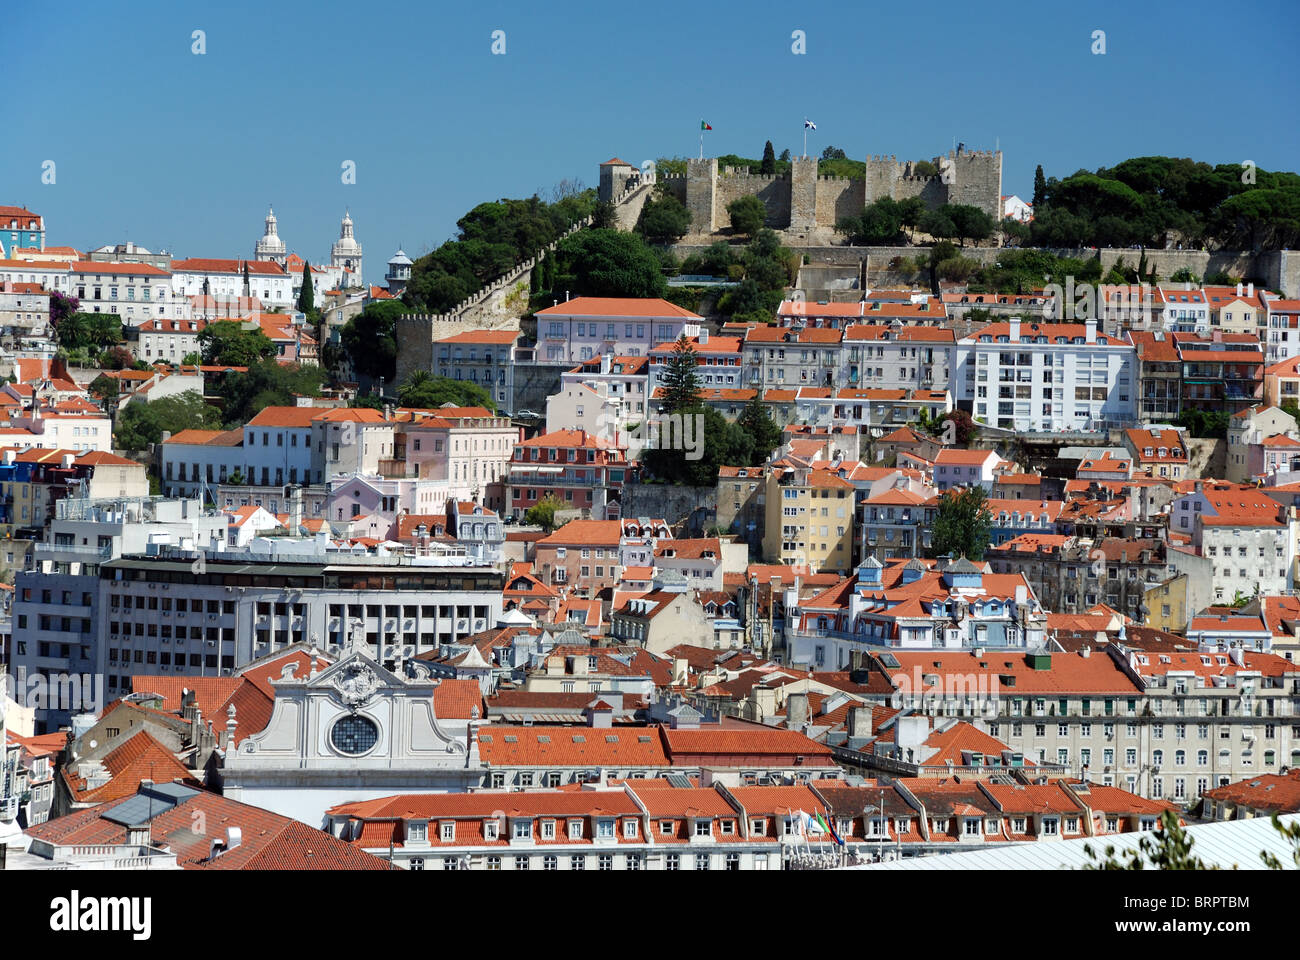 Lisbon - Castelo de São Jorge - St George castle view - Miradouro de São Pedro de Alcântara viewpoint - medieval monument Stock Photo